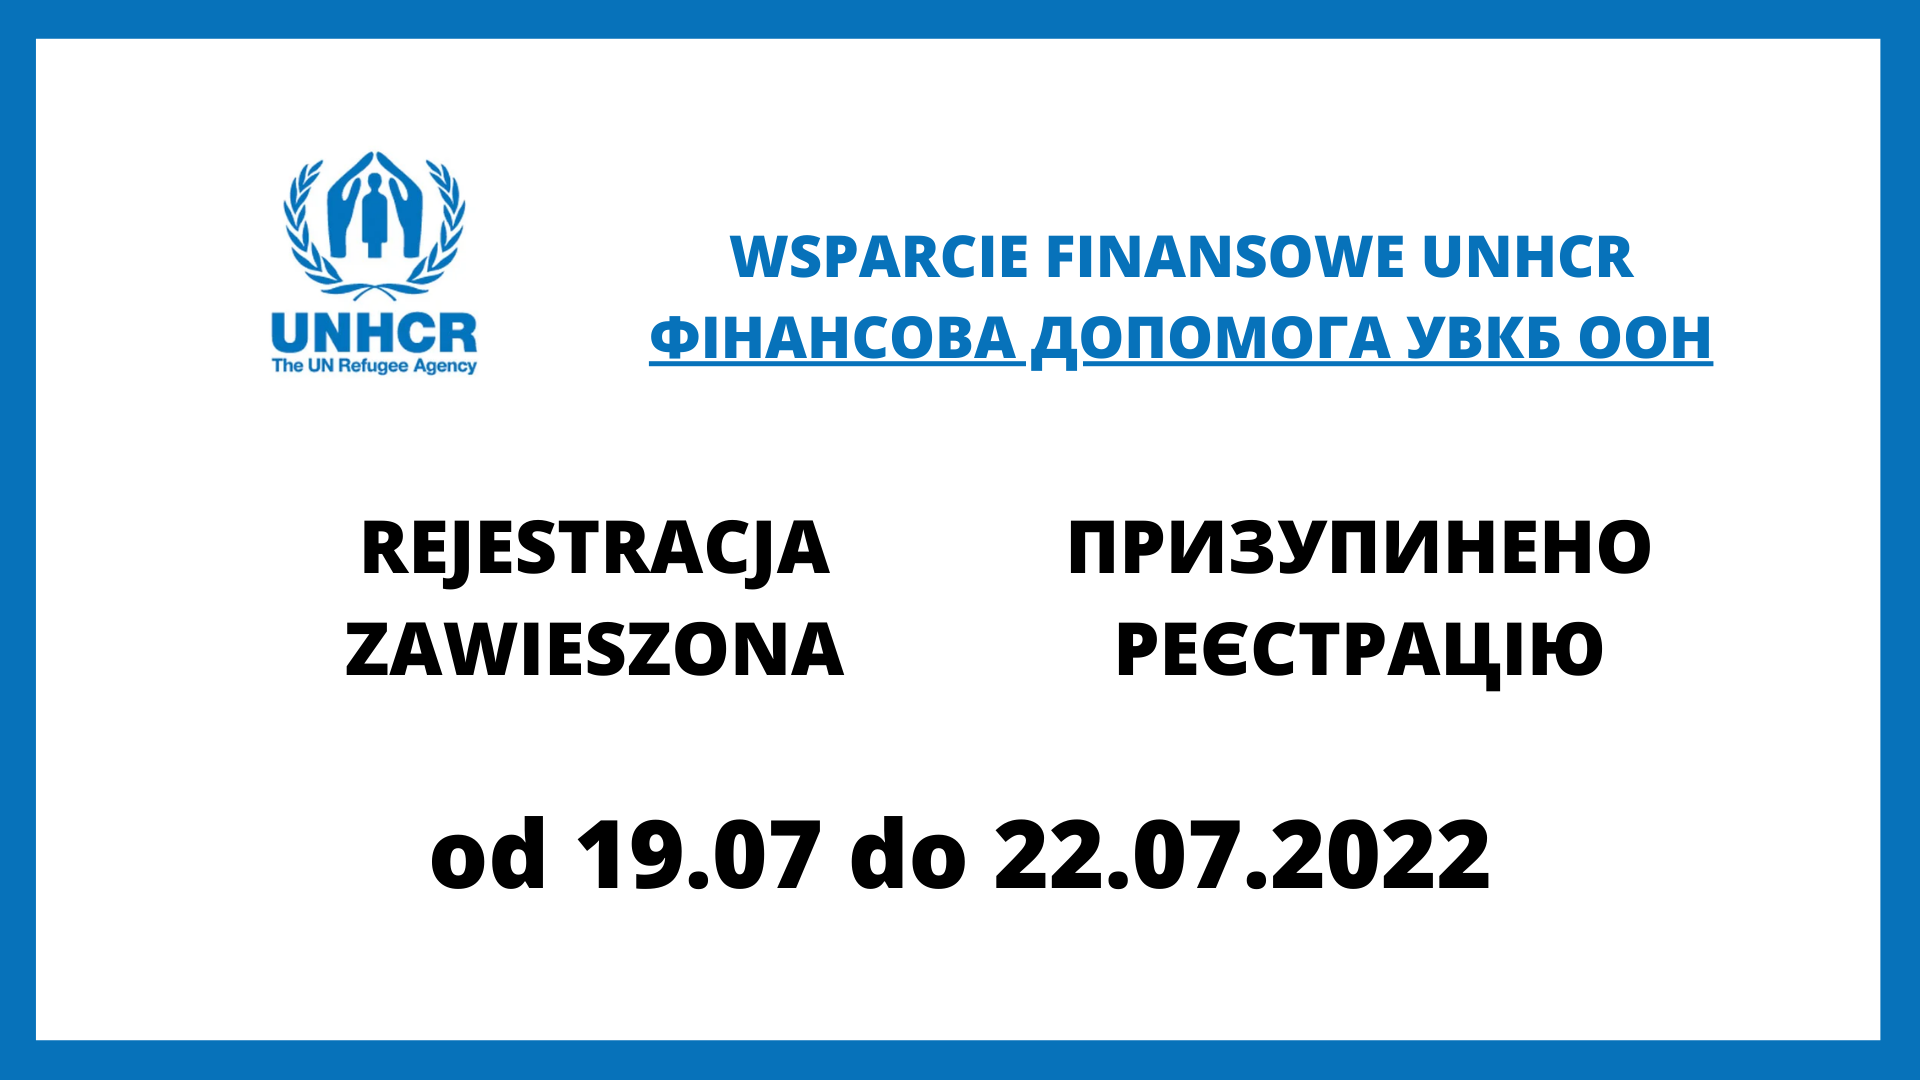 Wsparcie finansowe UNHCR – rejestracja zawieszona